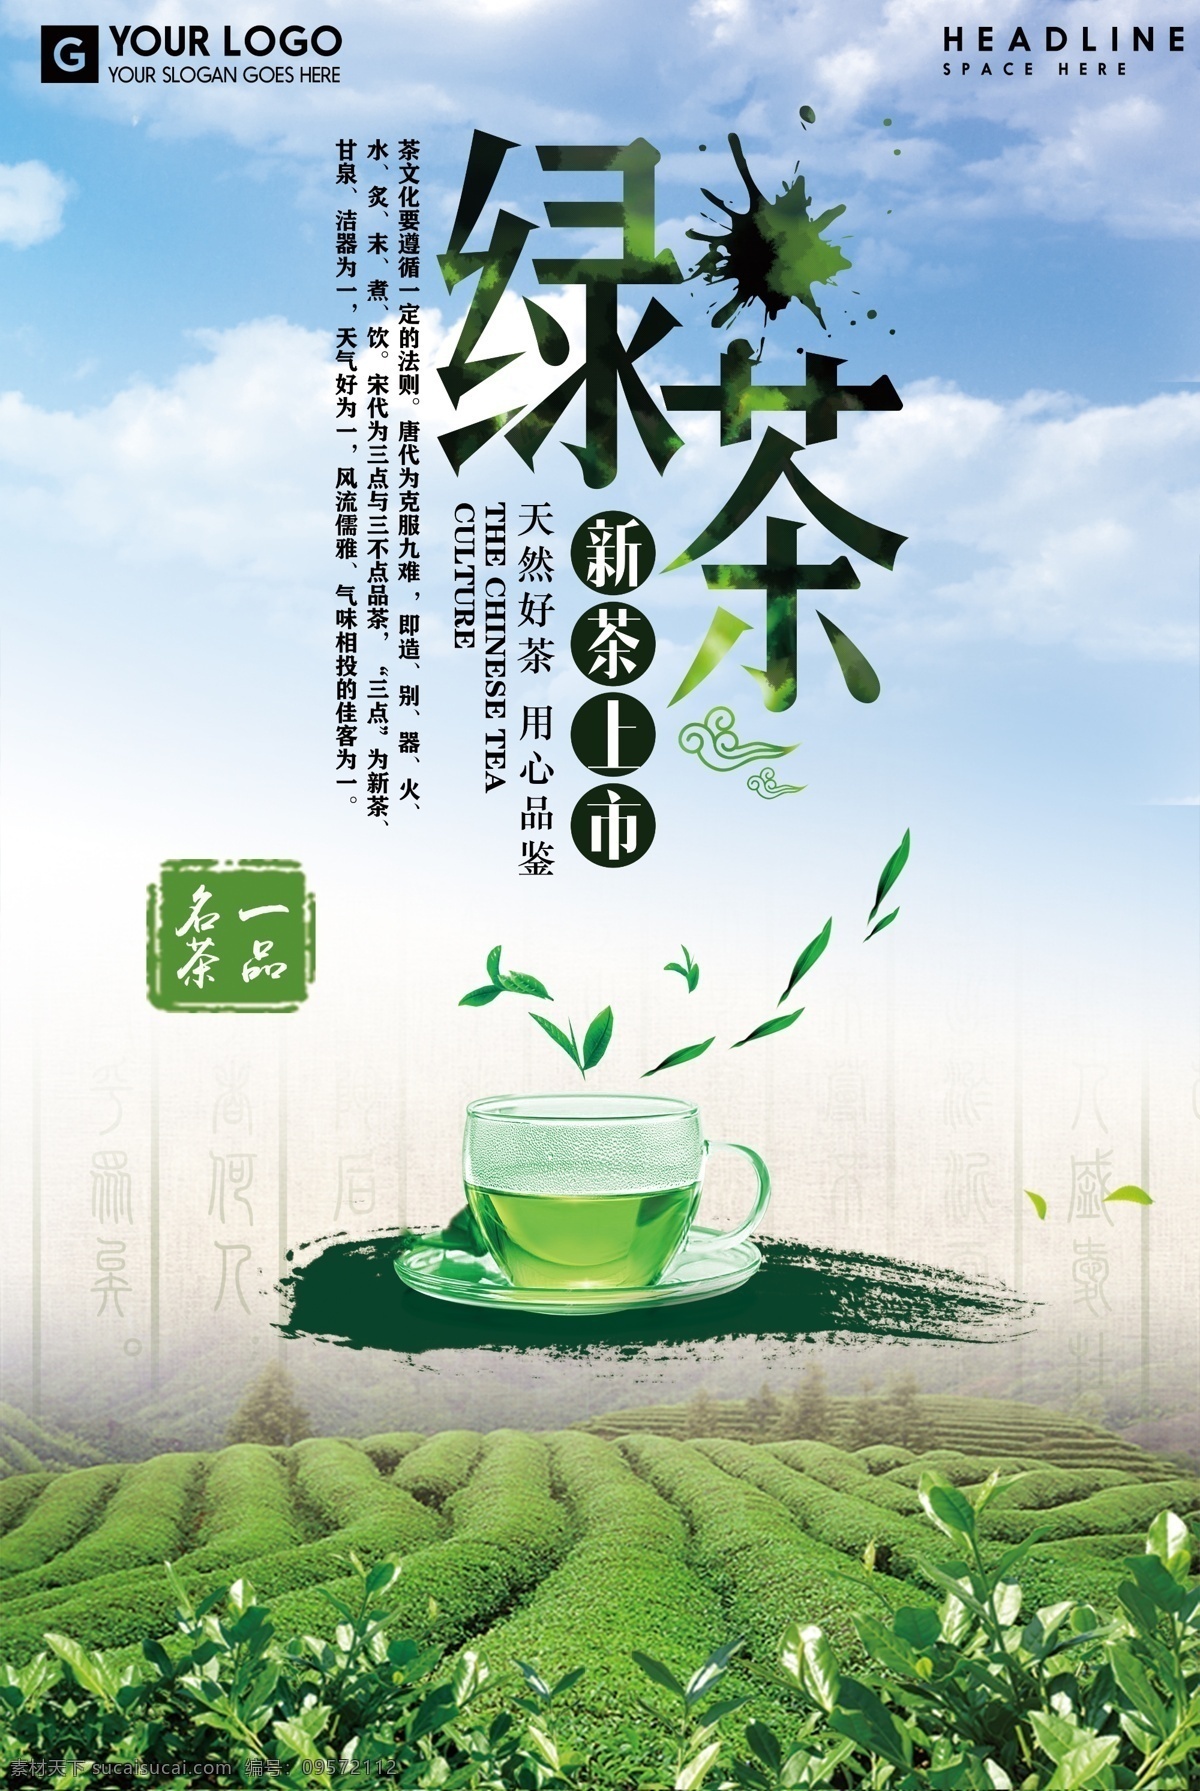 2018 创意 大气 绿茶 文化 宣传海报 茶文化海报 茶杯 绿茶文化 绿茶海报 碧螺春 手工茶 高山绿茶 文化创意